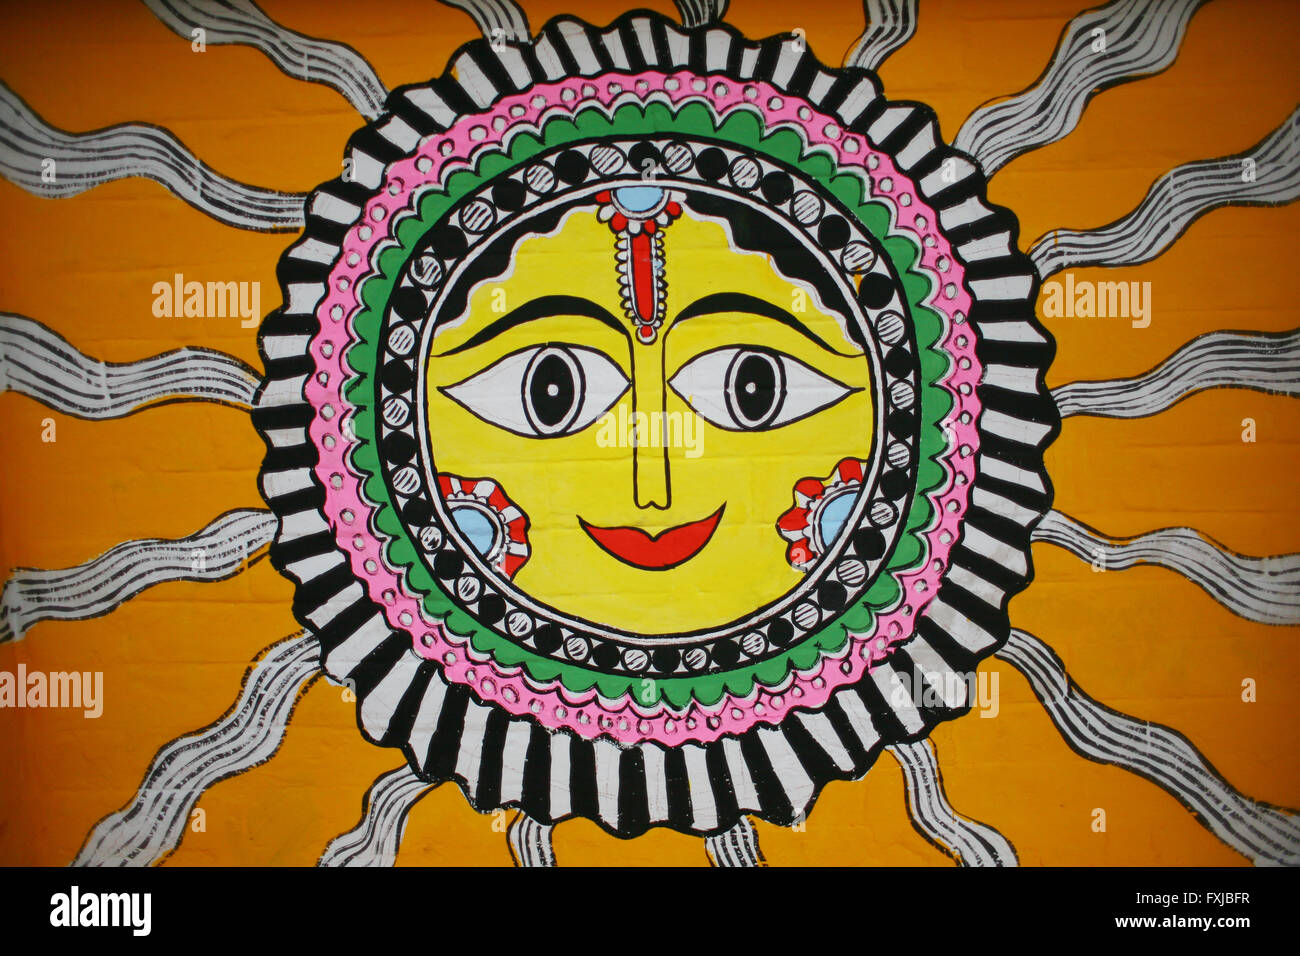 Sun traditionnels, l'art populaire de la peinture sur le mur Banque D'Images